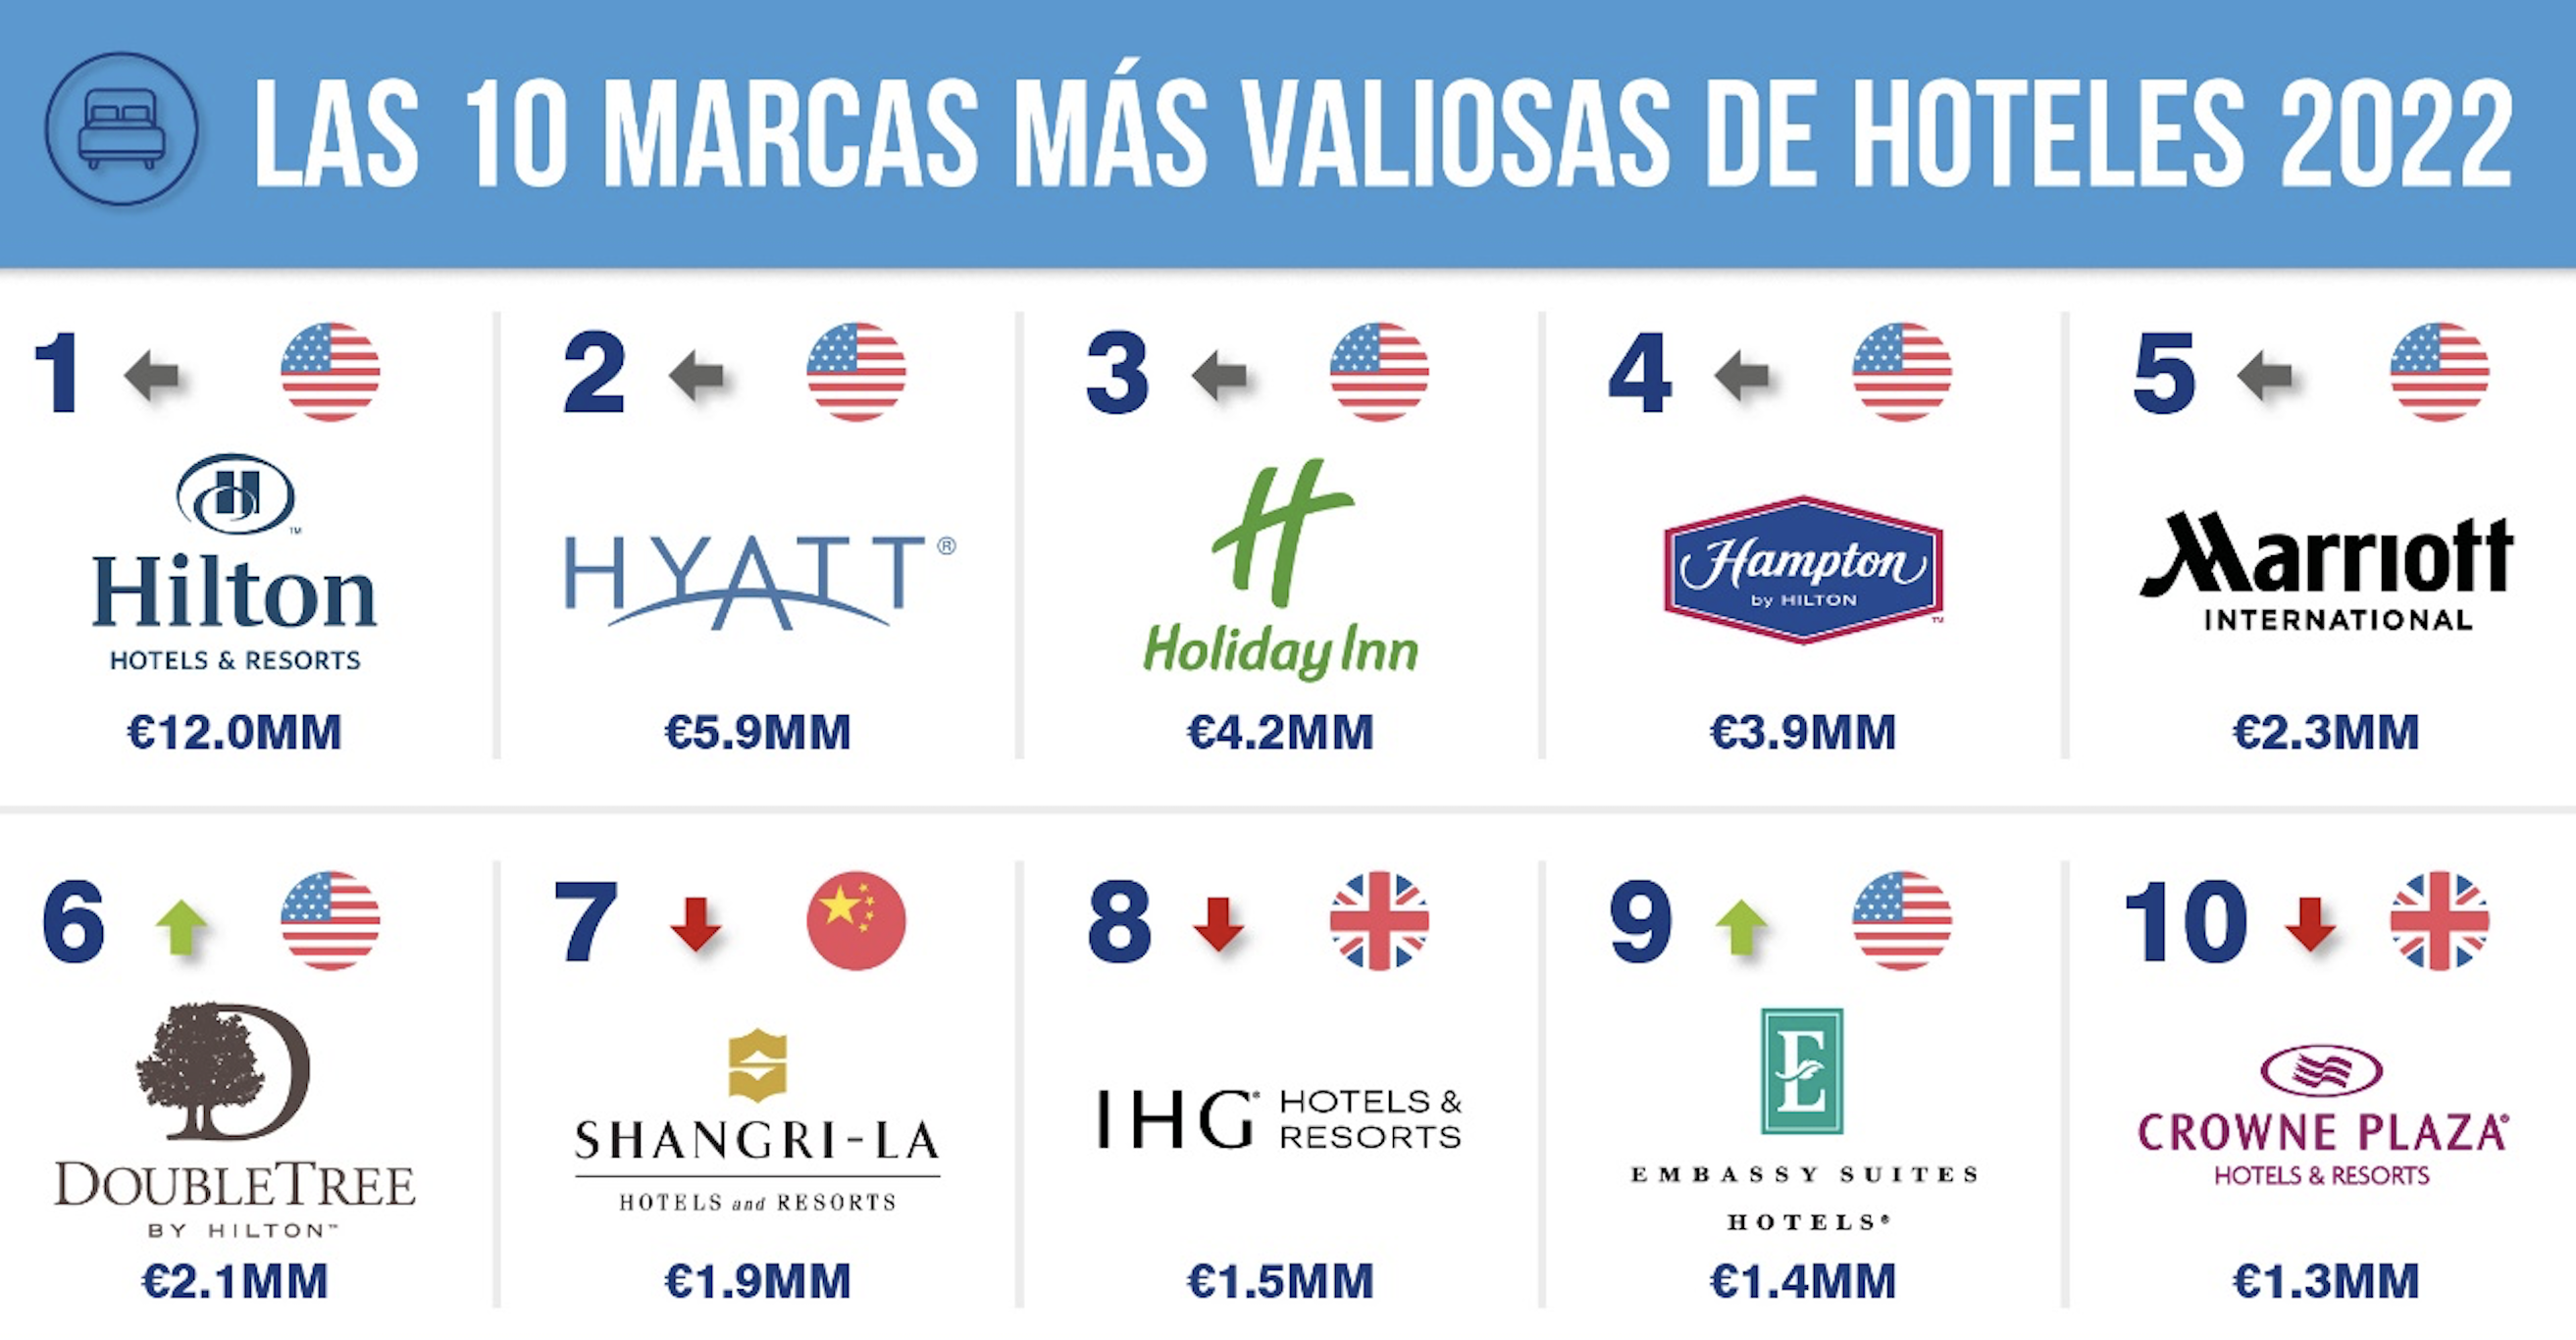 ​NH Hoteles y Grupo Barceló son las marcas españolas de hoteles más valiosas